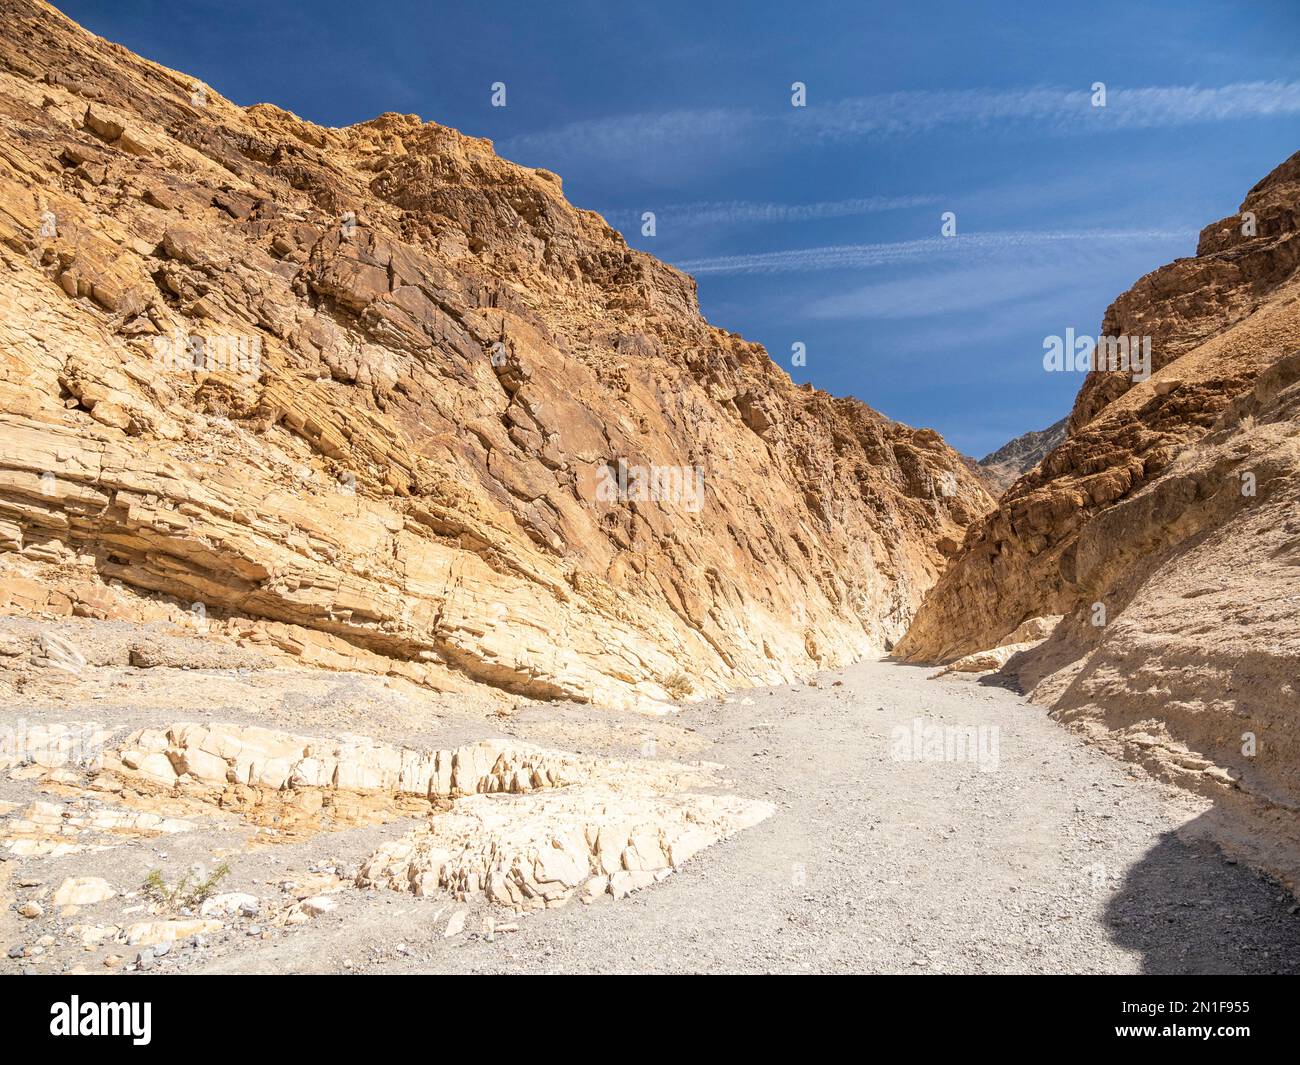 Vue sur la piste du canyon de la mosaïque dans le parc national de la Vallée de la mort, Californie, États-Unis d'Amérique, Amérique du Nord Banque D'Images